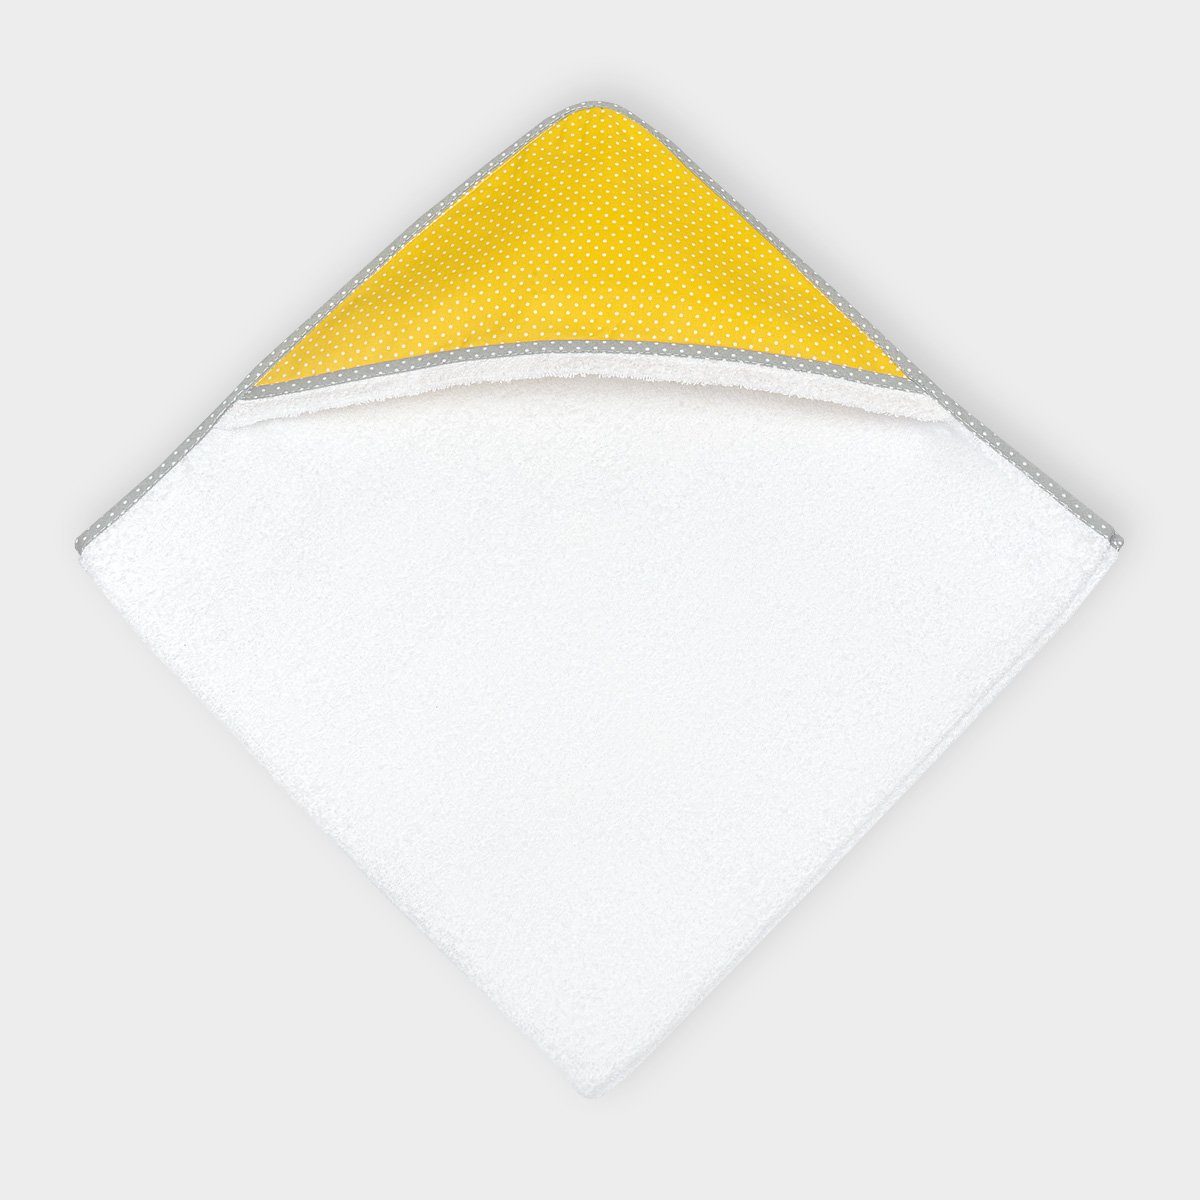 KraftKids Kapuzenhandtuch weiße Punkte auf Gelb, 100% Baumwolle, extra dickes und weiches Frottee, eingefasst mit Schrägband